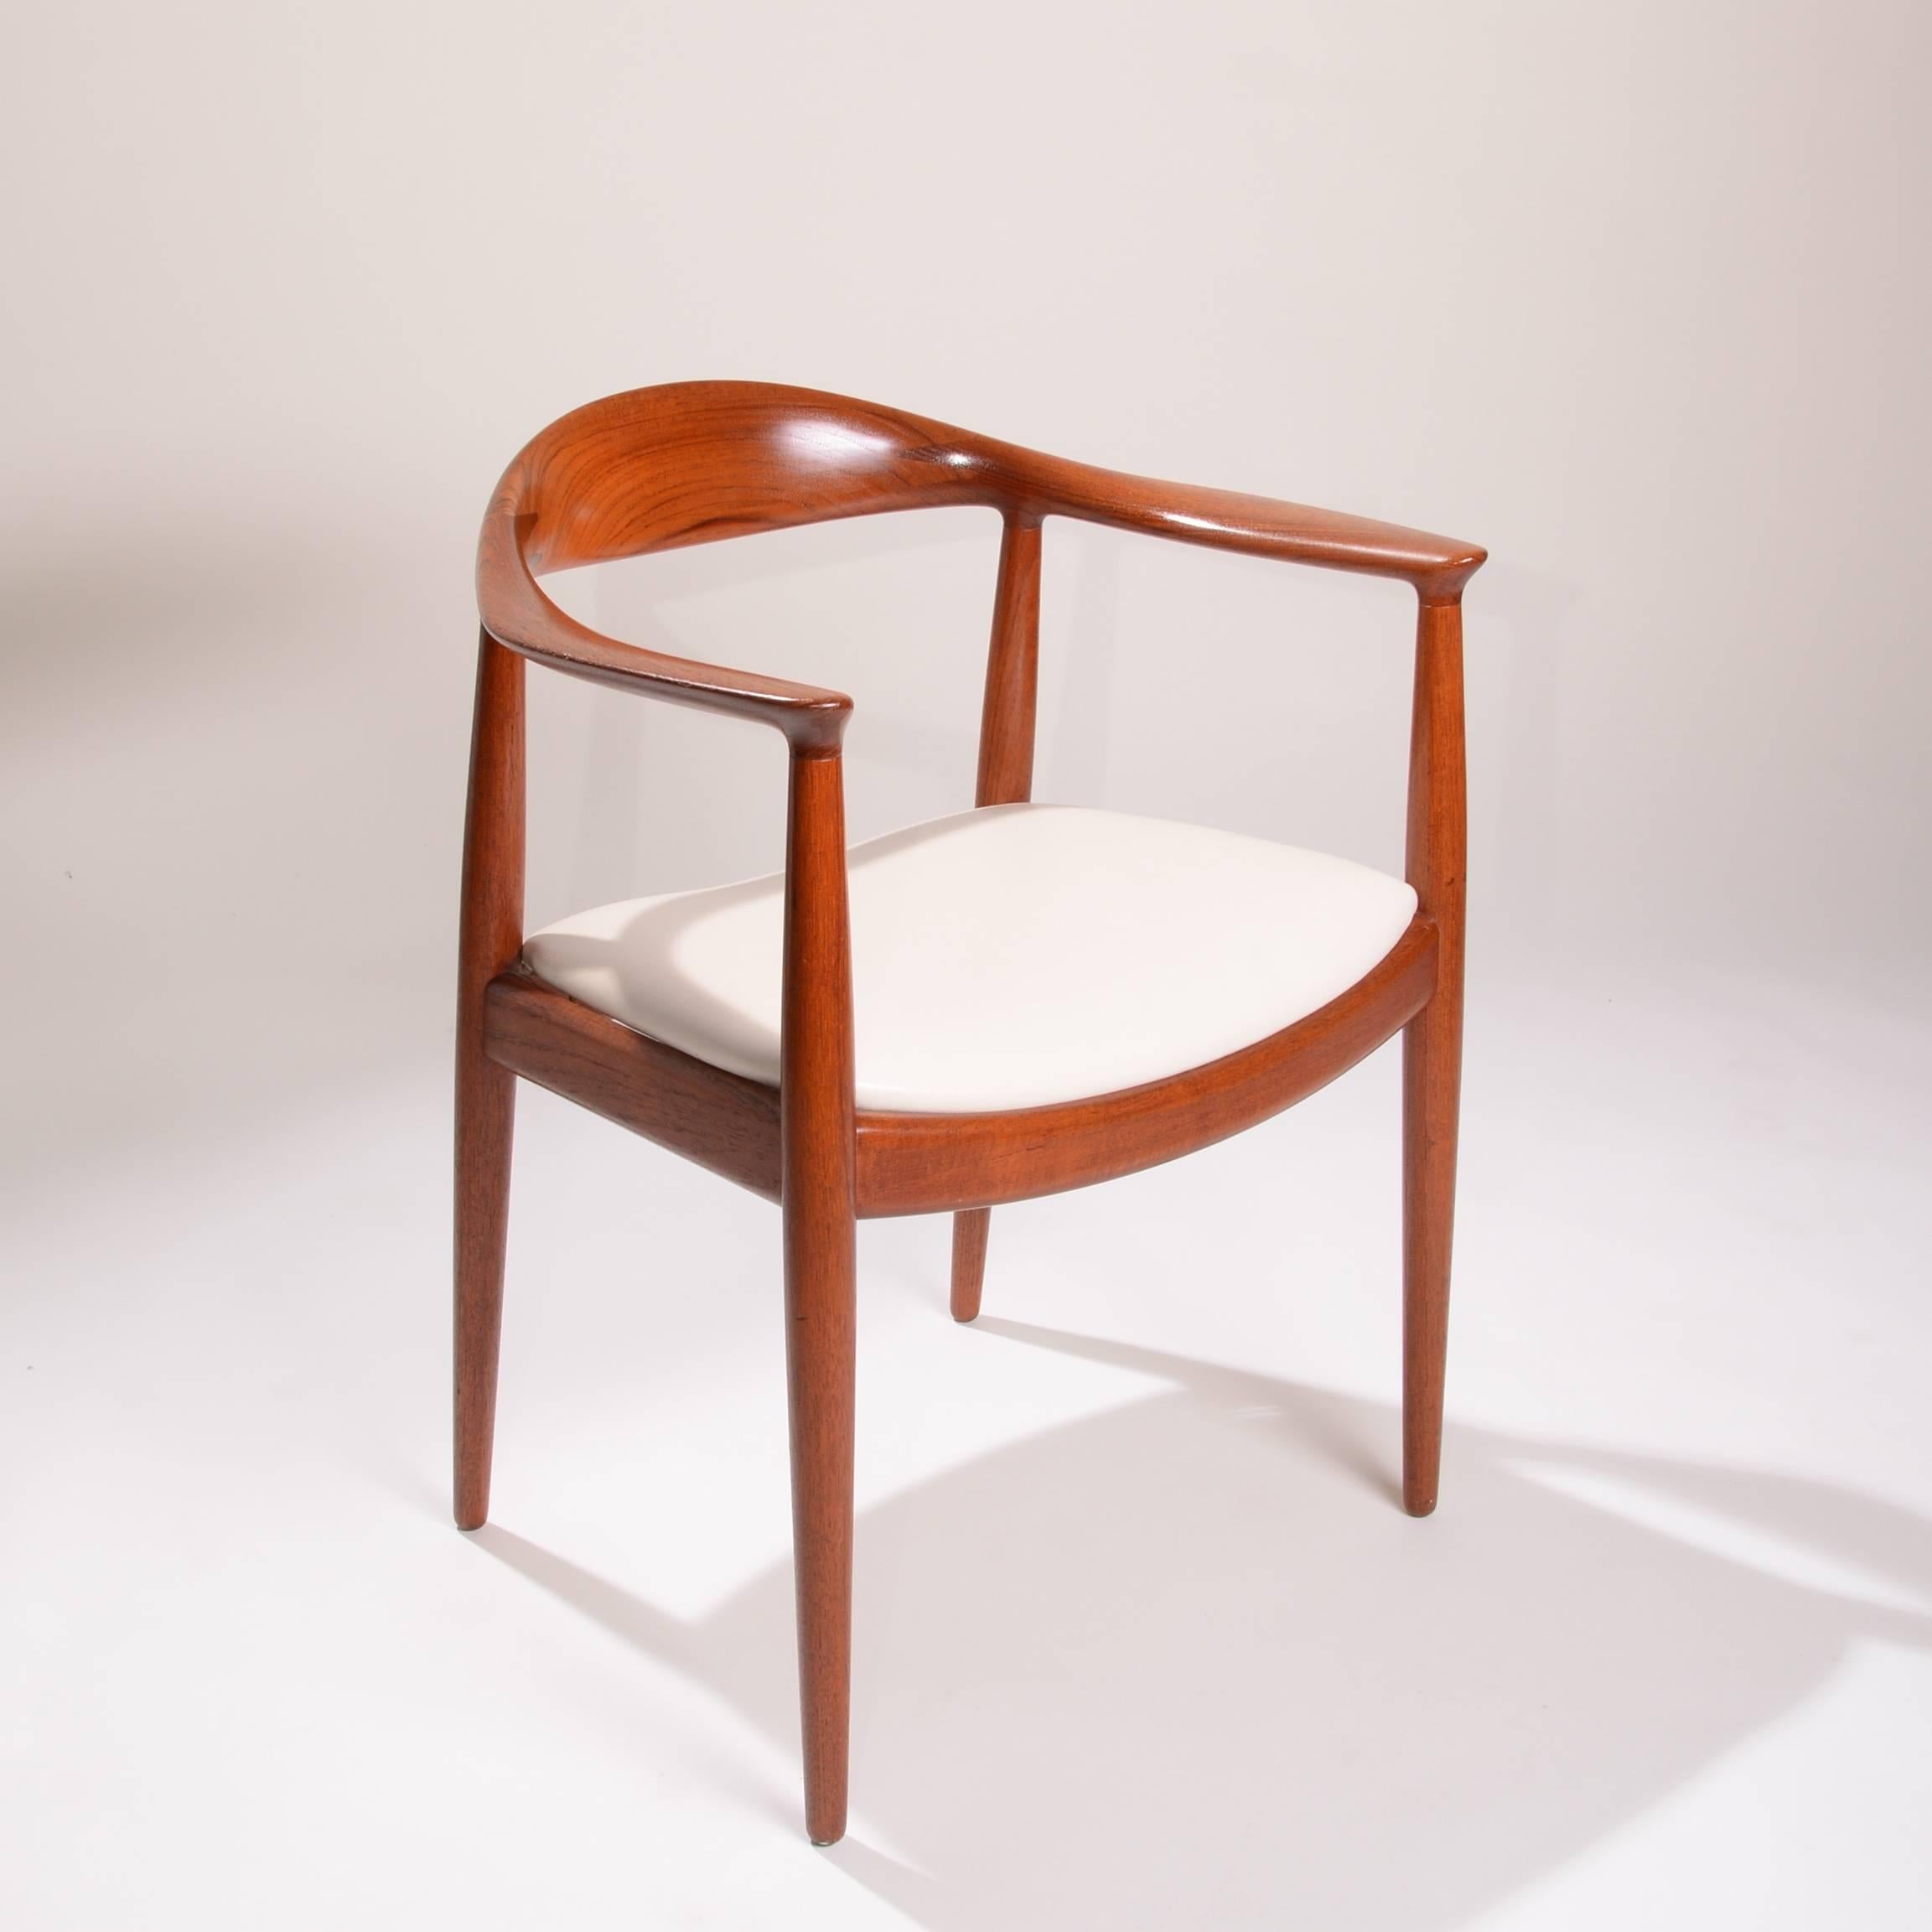 4 Early Hans Wegner for Johannes Hansen JH-503 Chairs in Teak For Sale 3